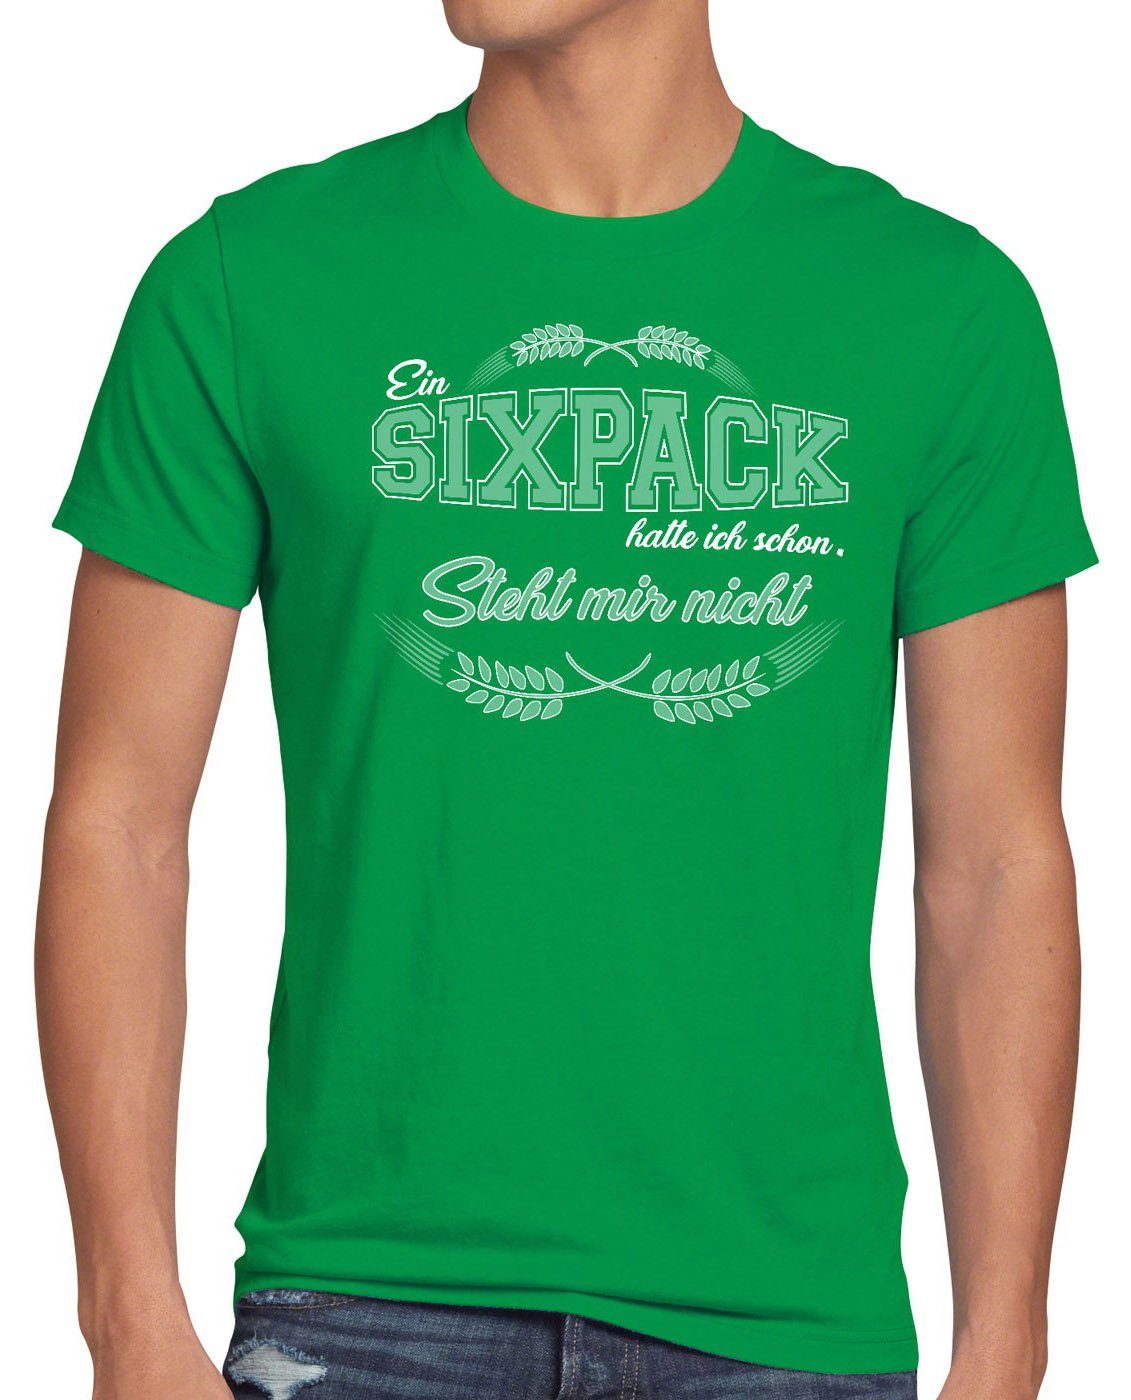 style3 Print-Shirt Herren T-Shirt Sixpack hatte ich steht mir nicht Funshirt Shirt Bier Fun Spruch grün